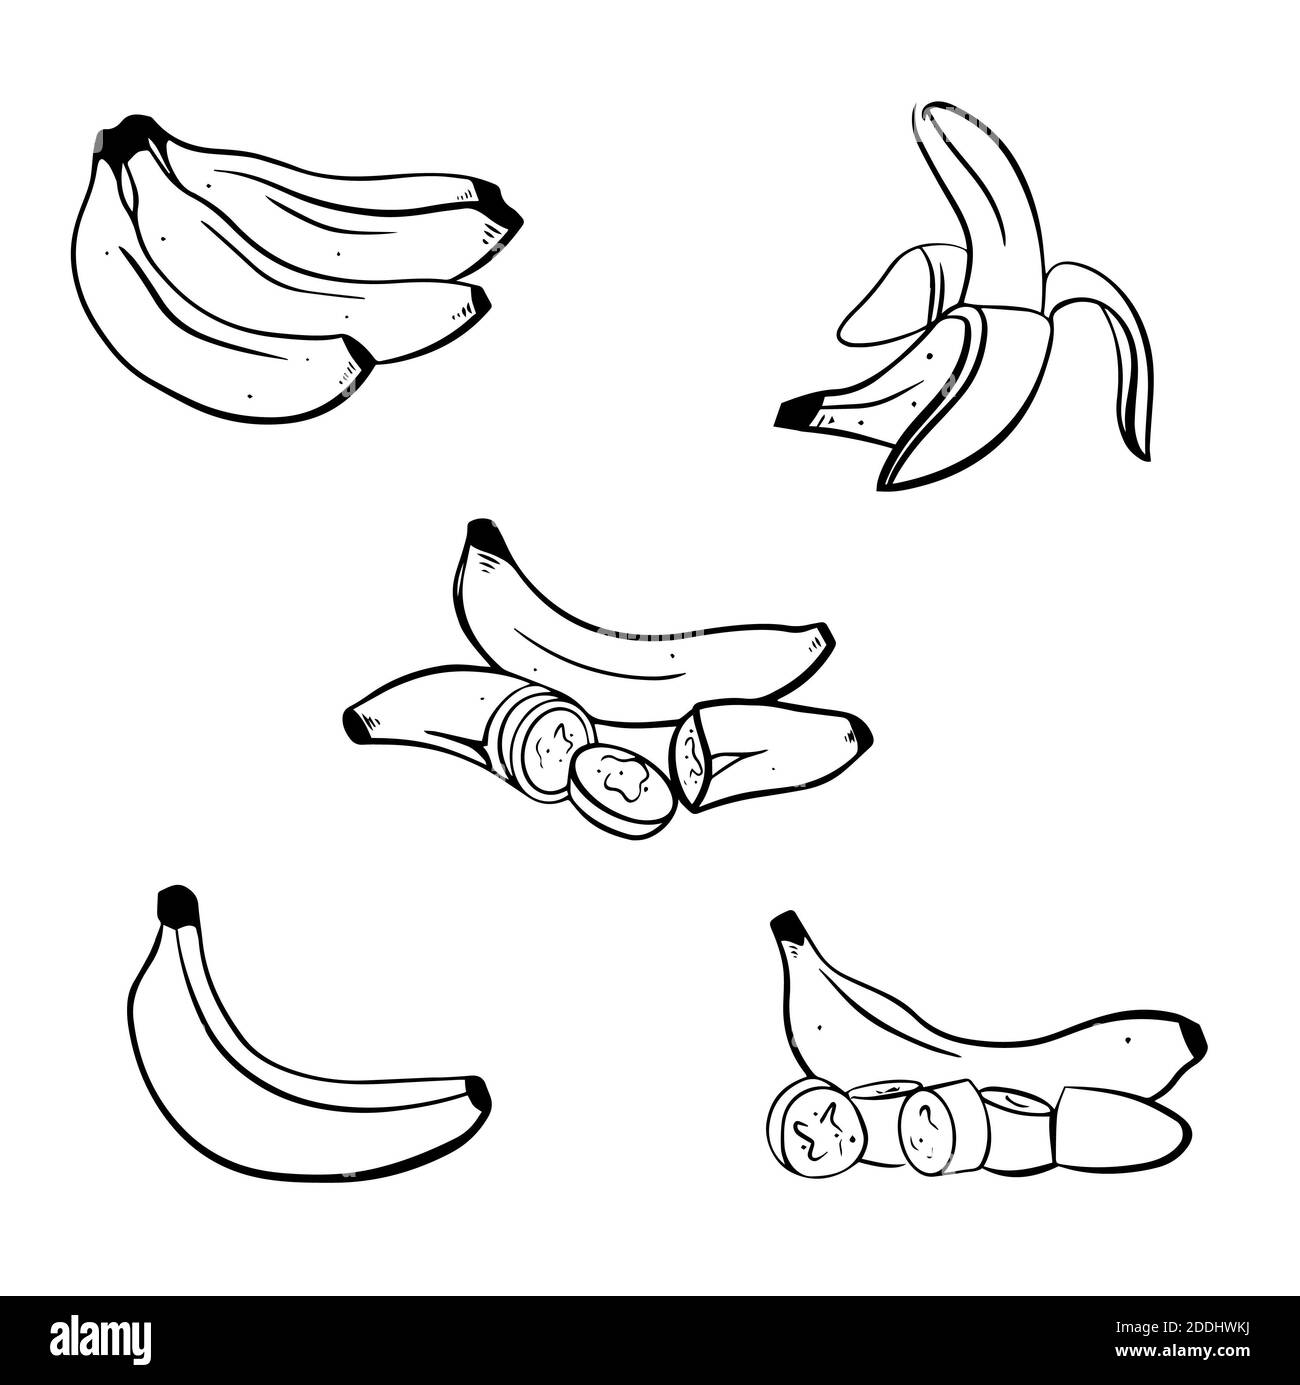 Illustrazione vettoriale a banana su sfondo bianco. Mazzetto isolato, a mano, a buccia di banana e pezzi tagliati a fette. Può essere utilizzato per etichette, poster, stampa, imballaggio Foto Stock